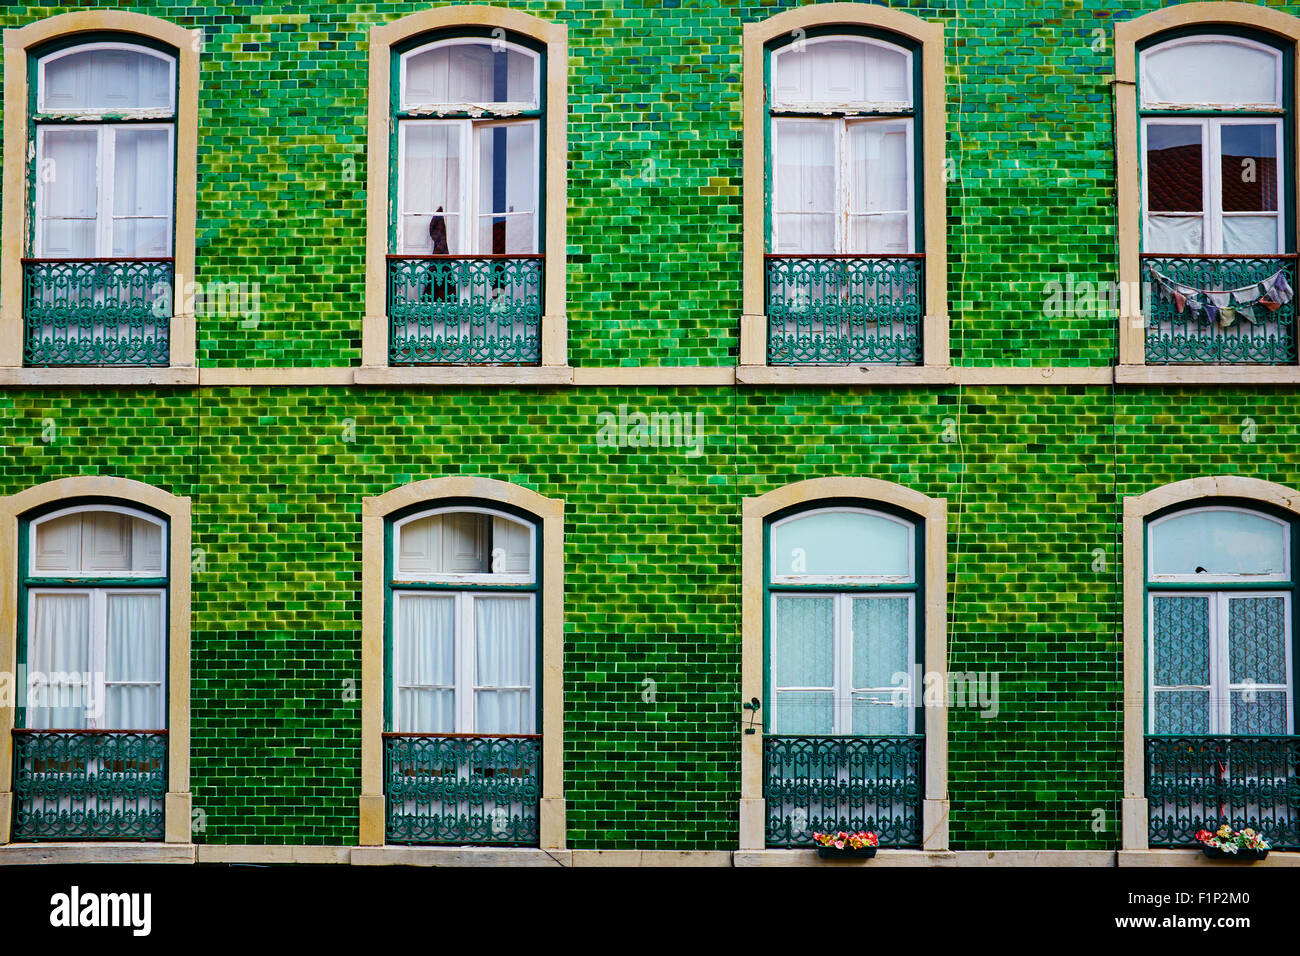 Portugal, Lisbon, front building in Bairro Alto area Stock Photo